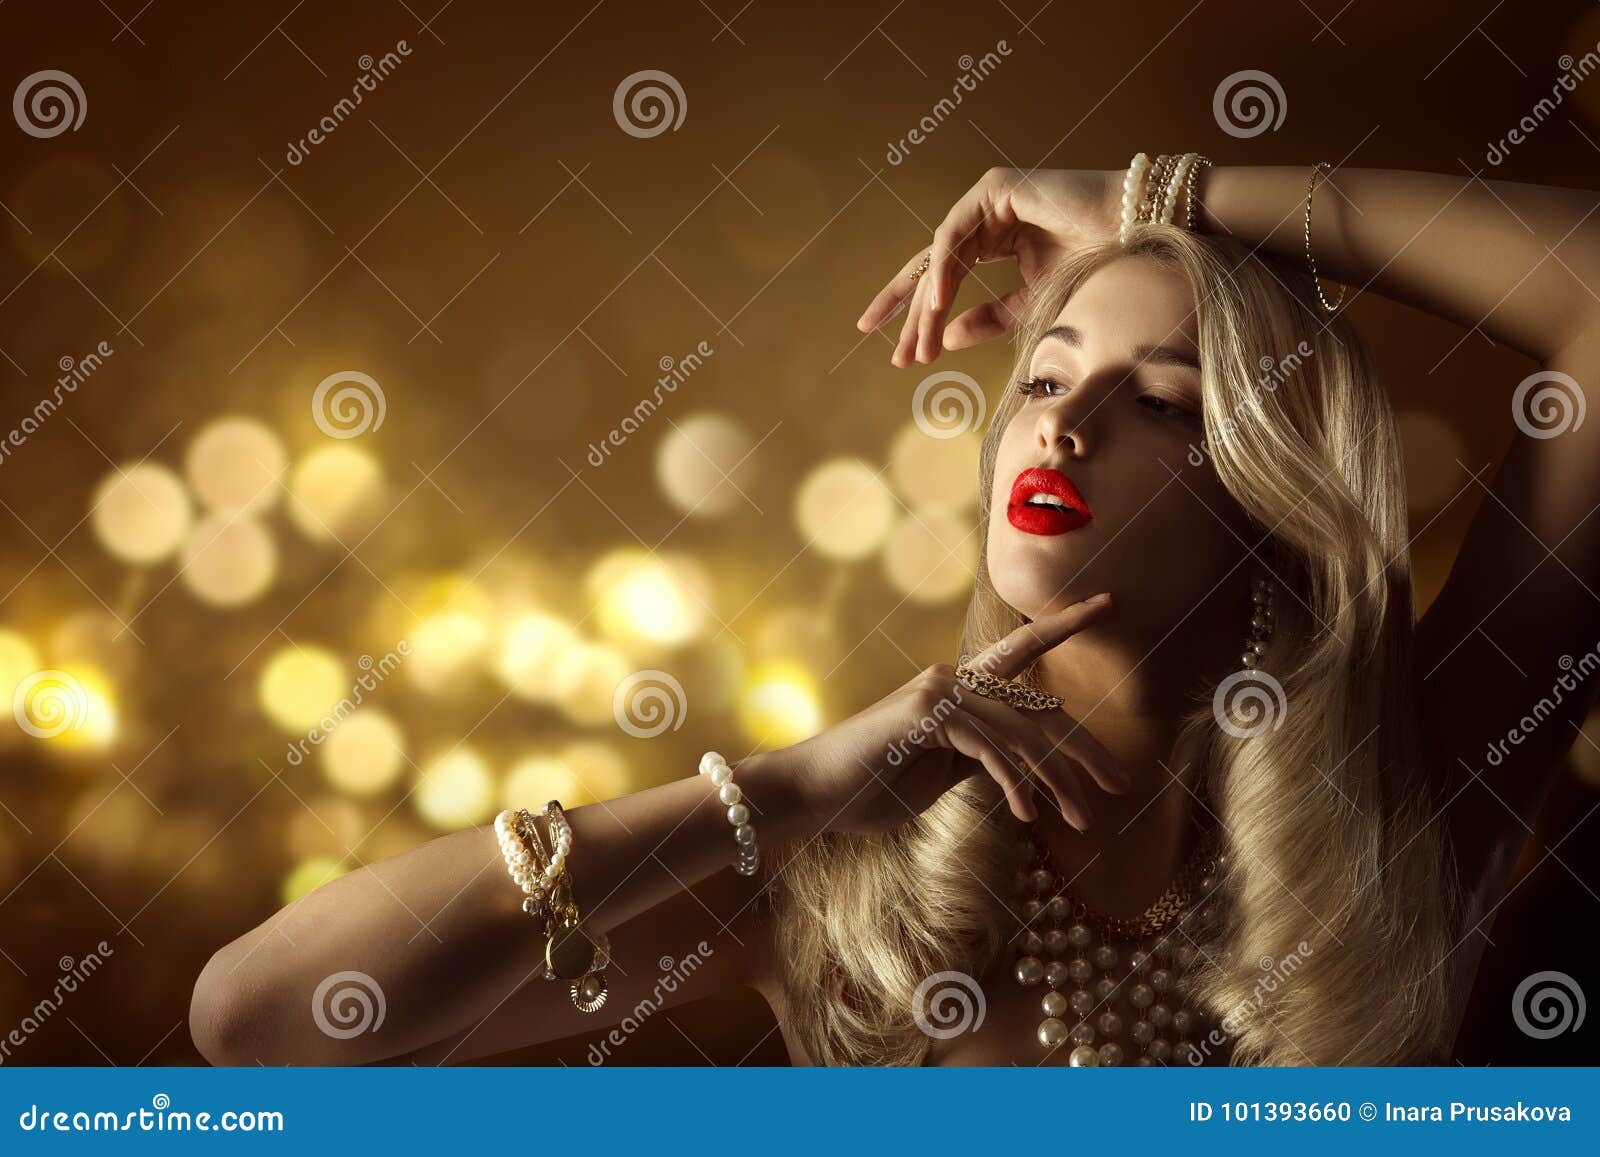 fashion model beauty jewelry portrait, elegant woman jewellery